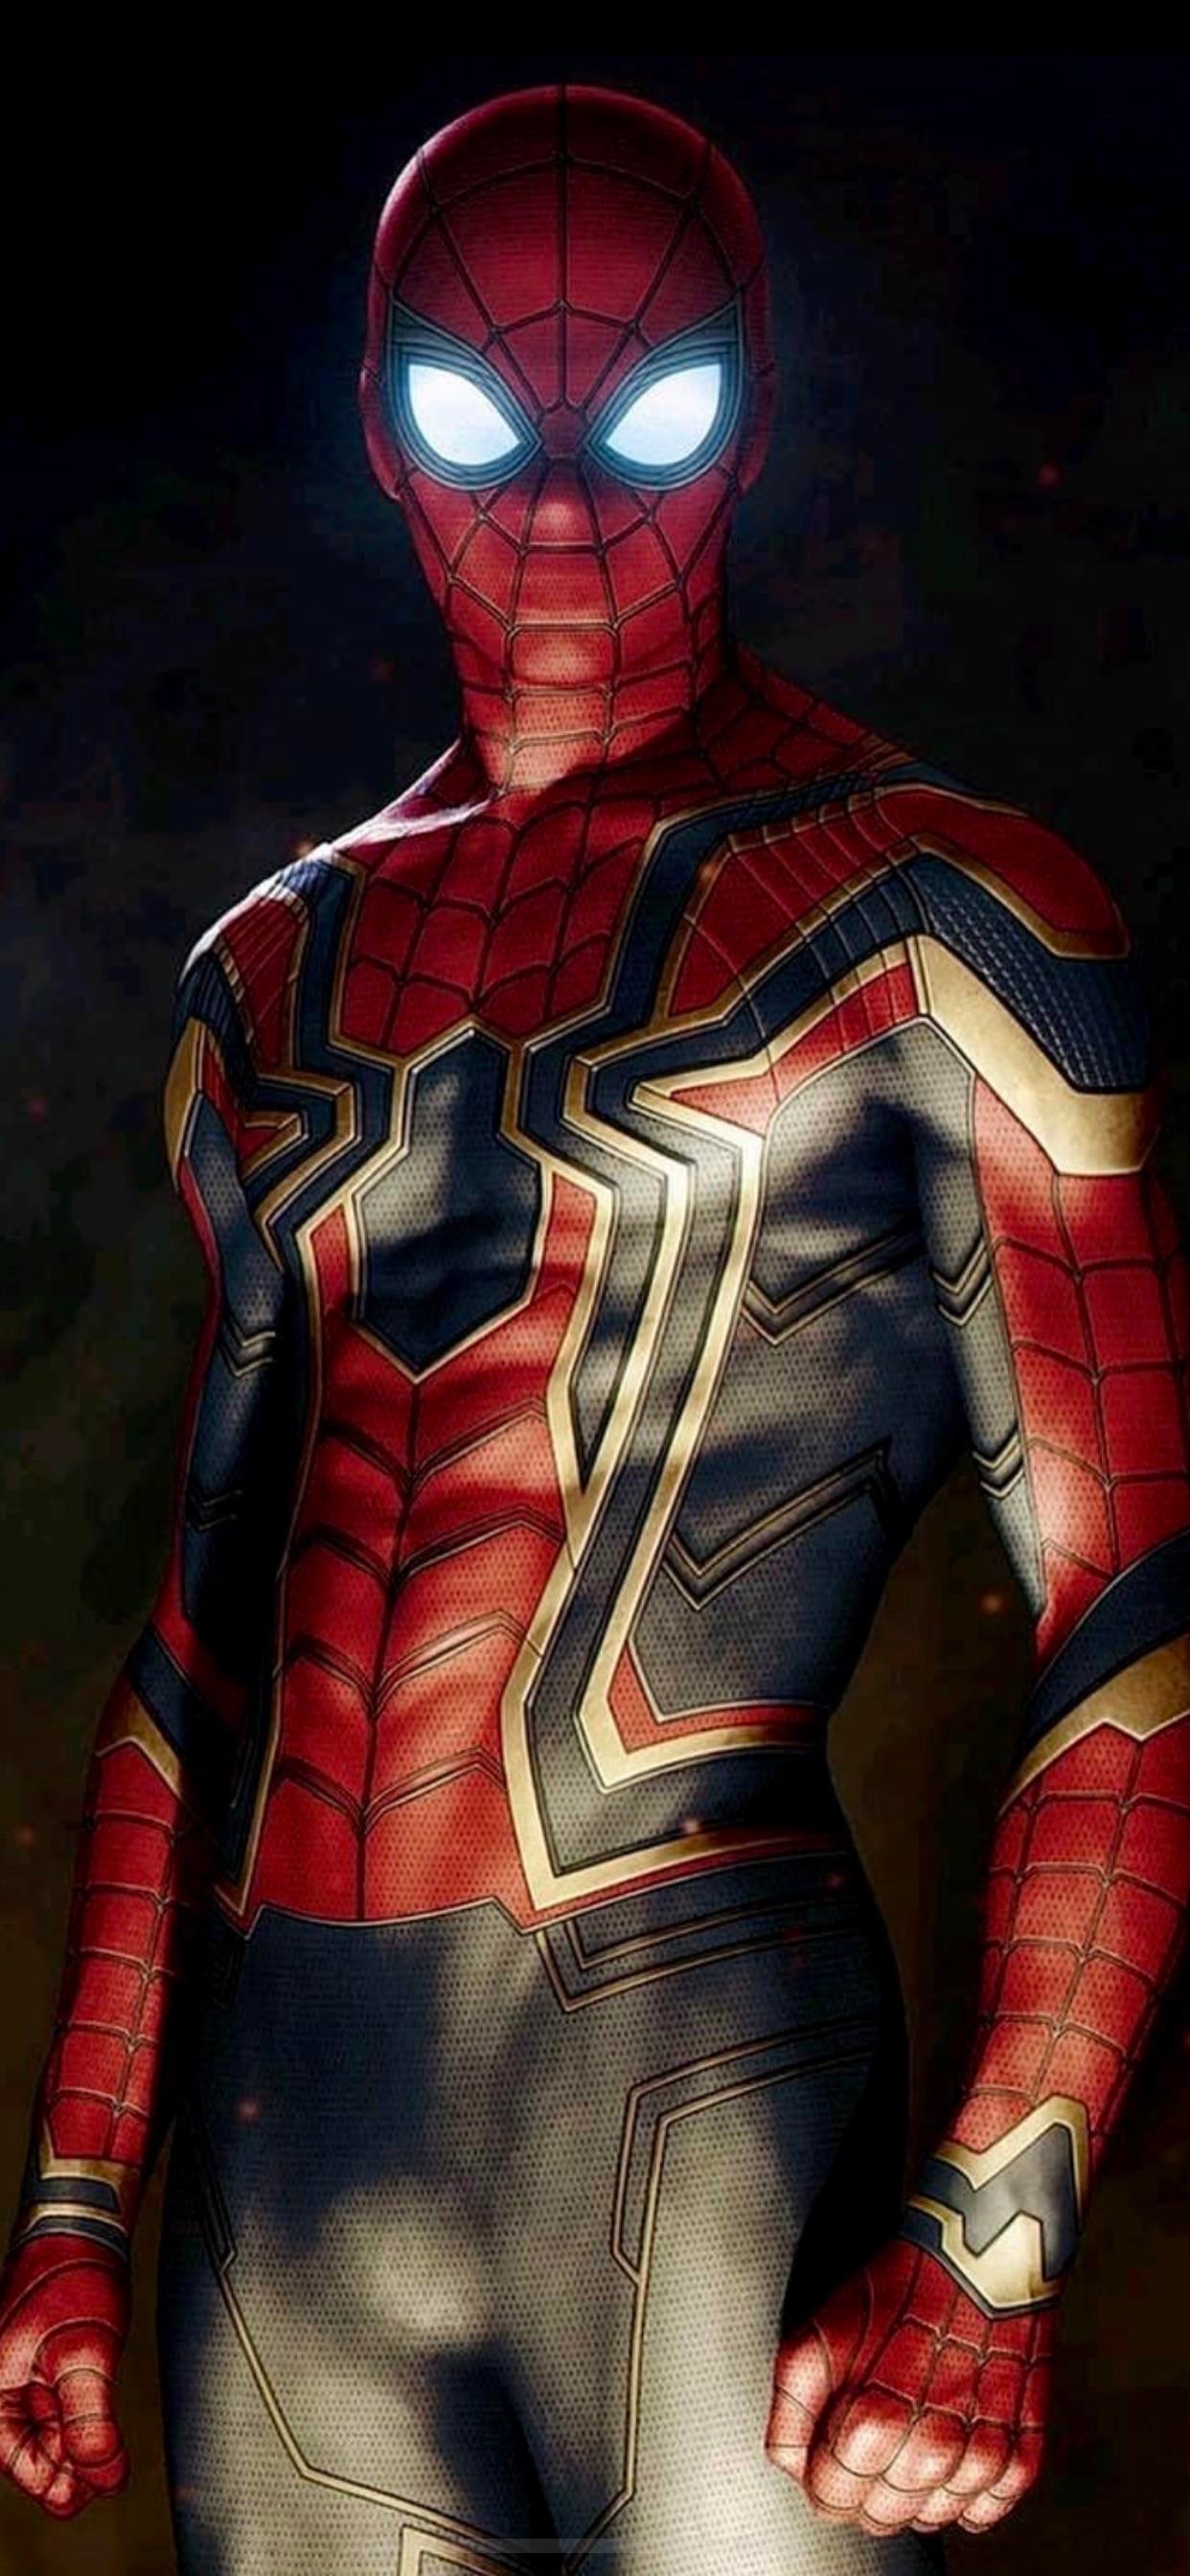 Mcu Iron Spider Wallpaper I Found Online R Spiderman